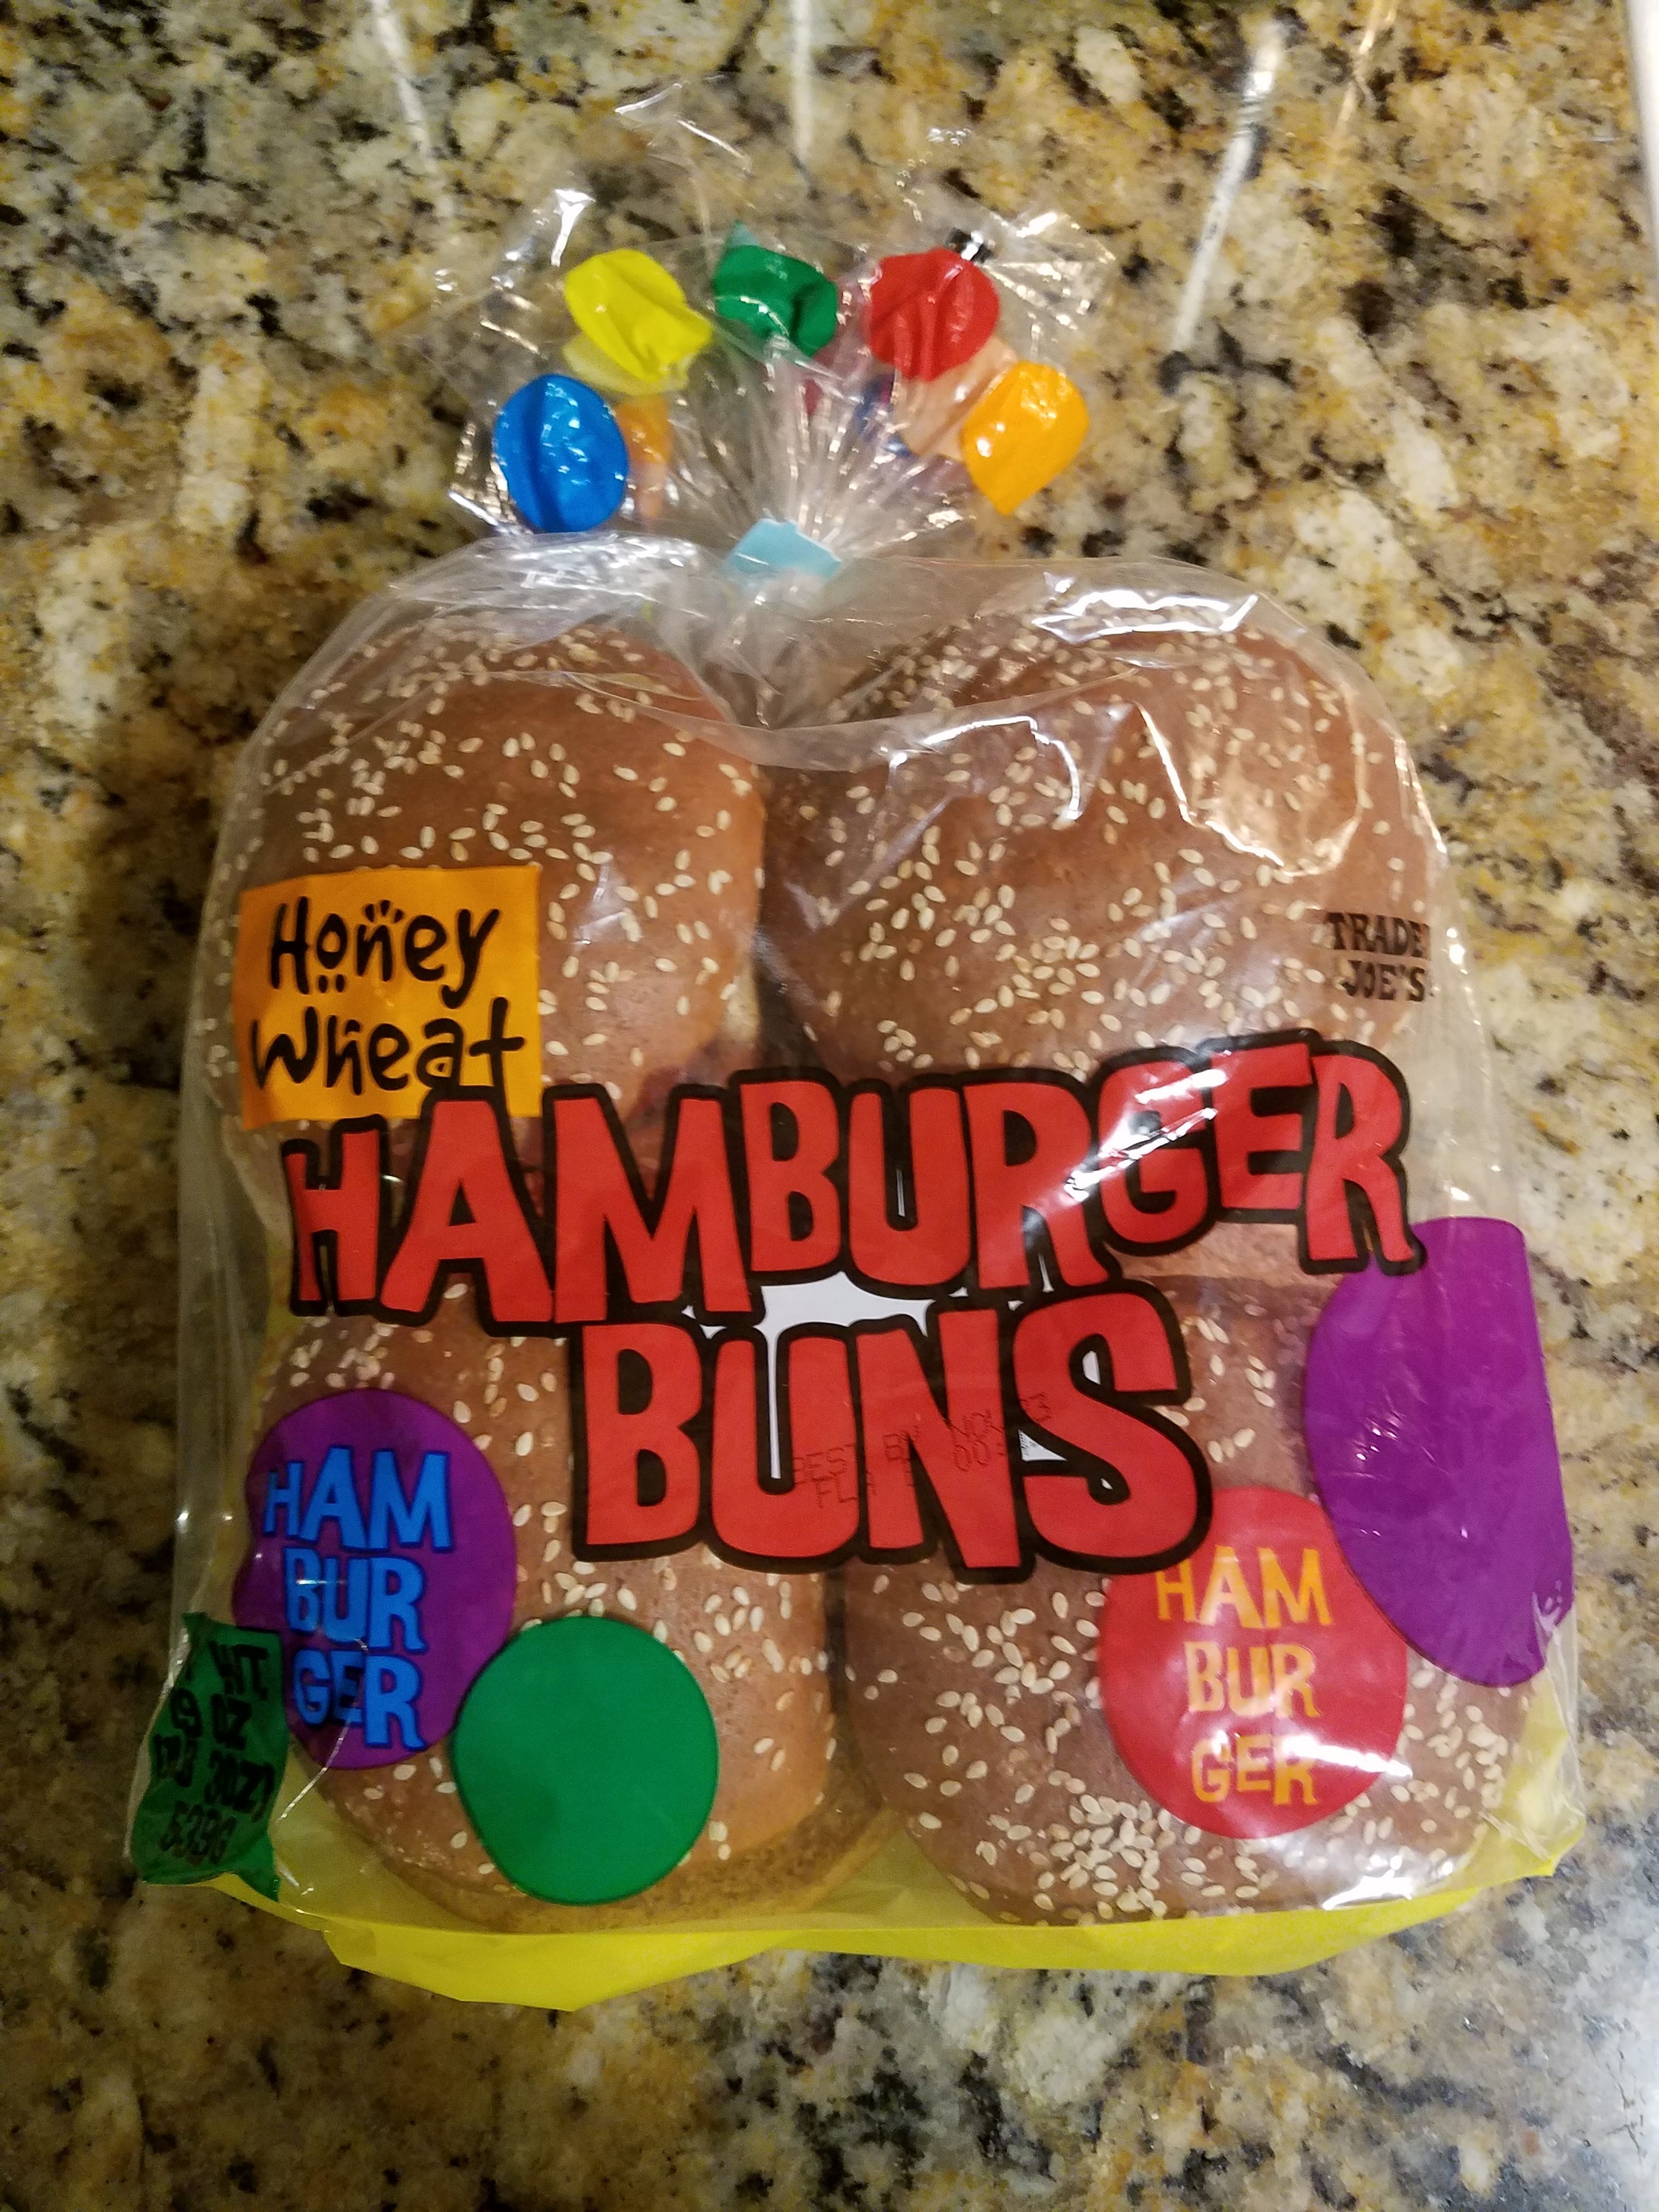 Buns | Trader Joe's Honey Wheat Hamburger Buns Review | Review